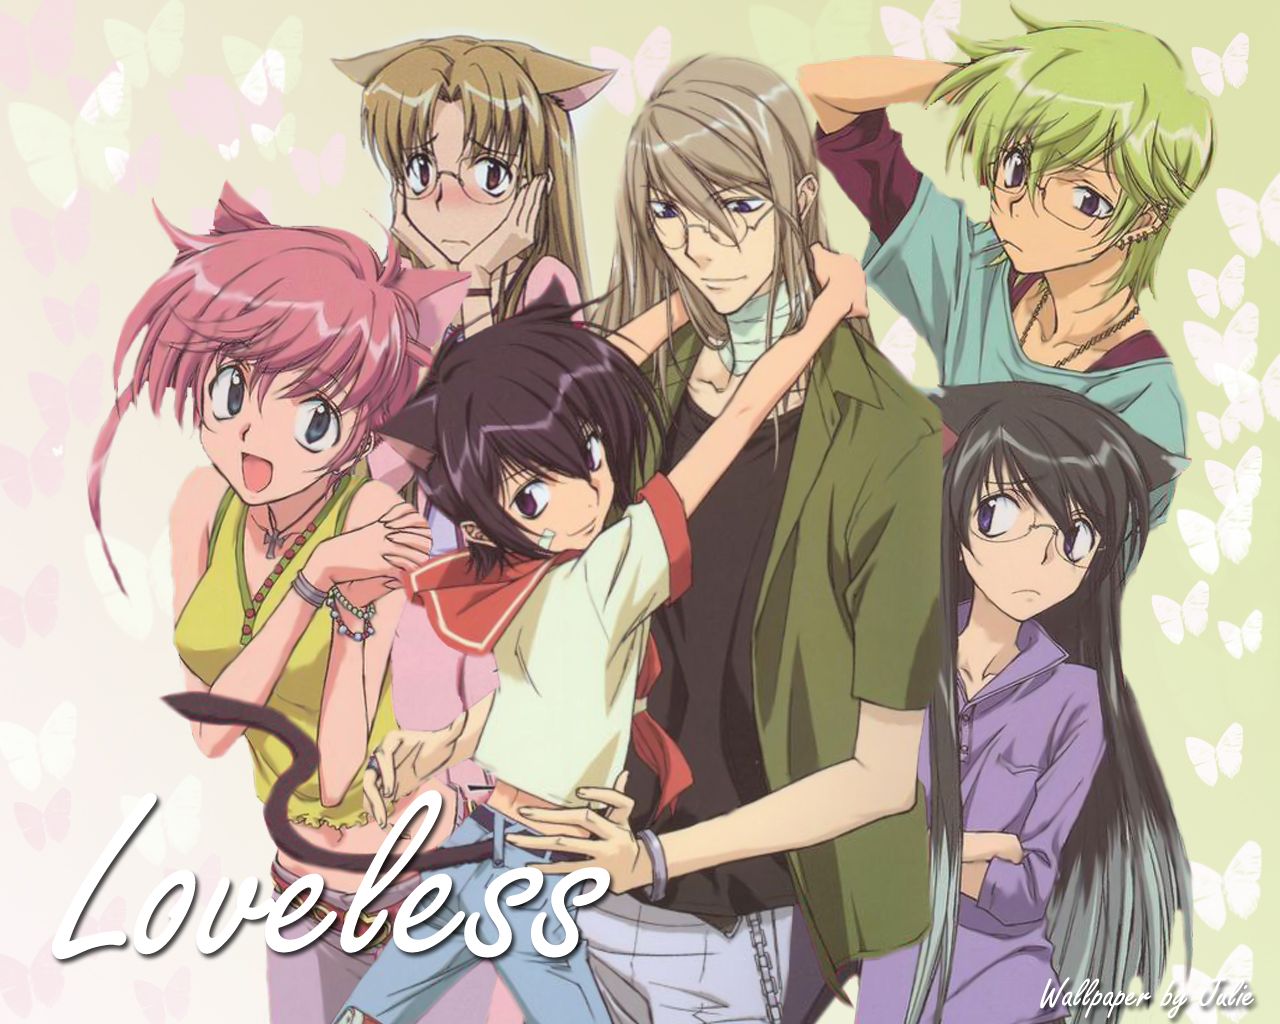 Loveless wallpaper, Anime, HQ Loveless pictureK Wallpaper 2019